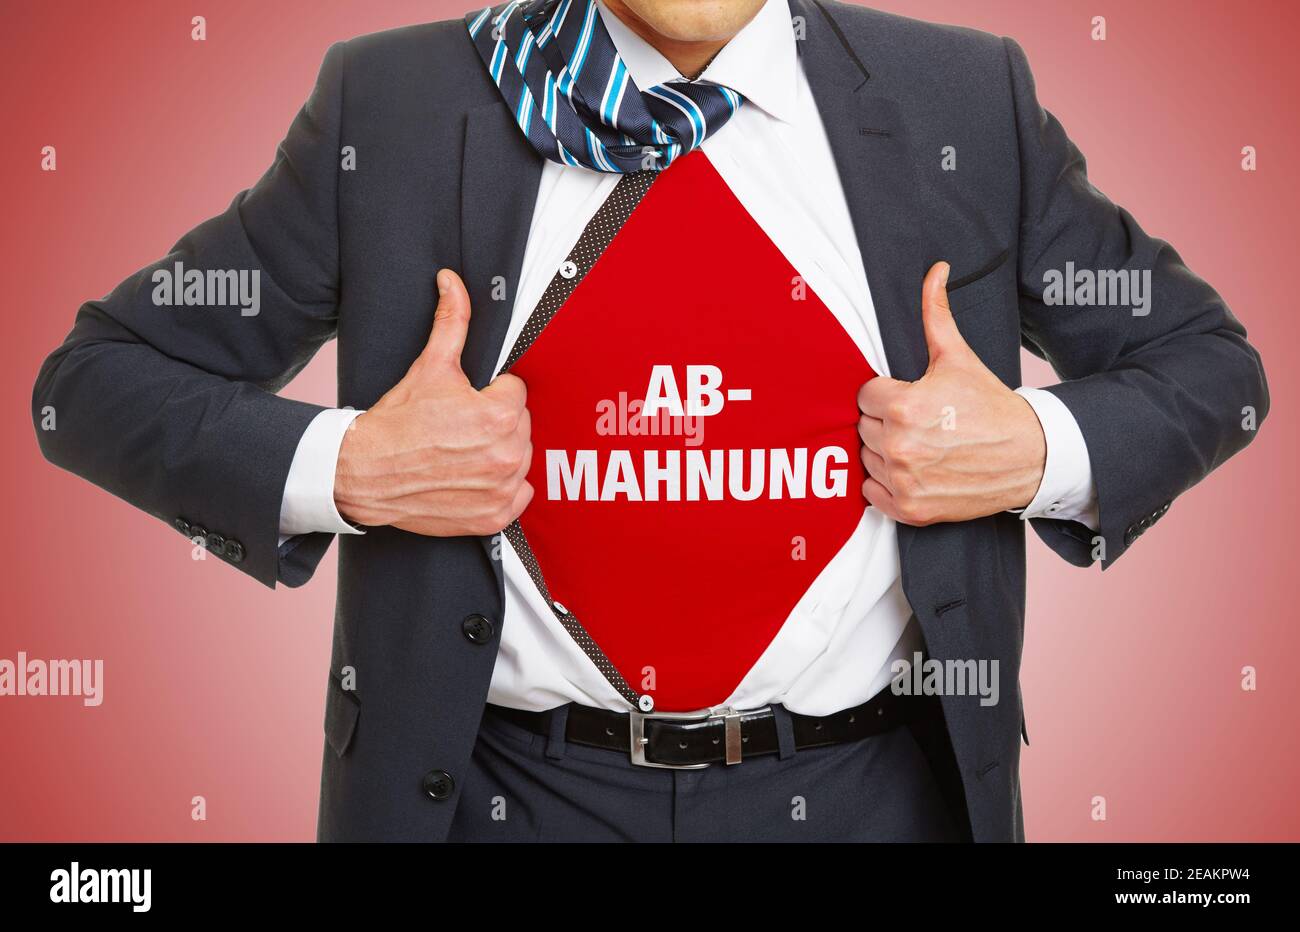 Abhmaunung (allemand pour: Avis final) concept avec lettrage sous chemise d' avocat ou d'homme d'affaires en costume Photo Stock - Alamy